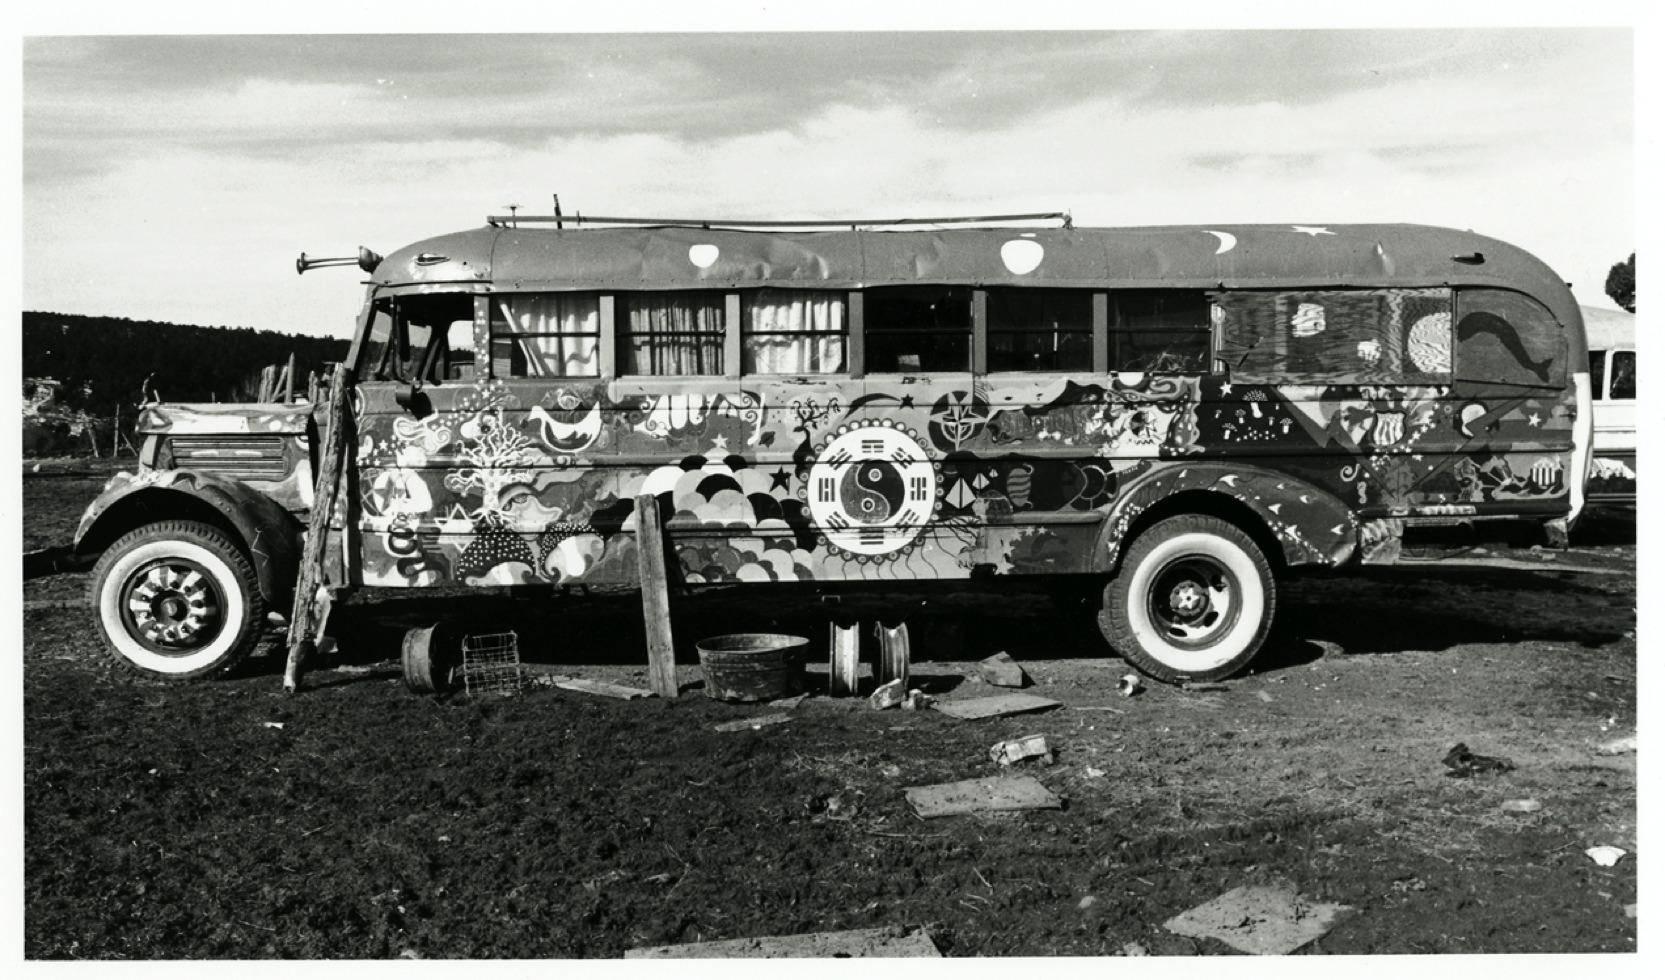 Jerry de Wilde Black and White Photograph - Hog Farm Bus, Llano, NM 1972